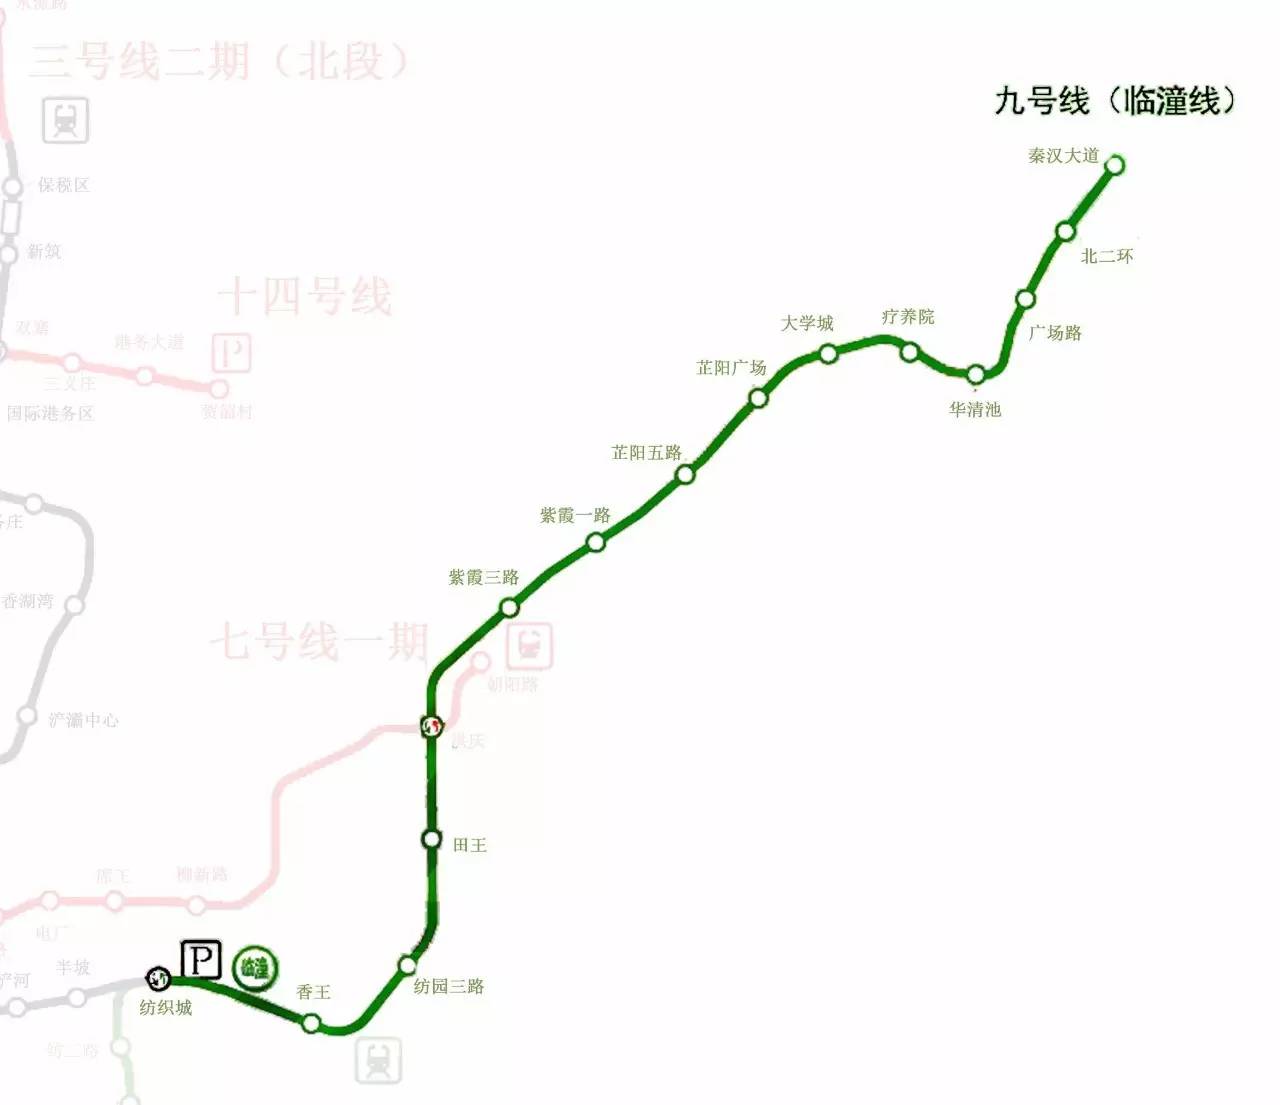 【陕西传媒网】西安地铁4号线预计明年通车 2020年9号线直达临潼(附图)-热点追踪-京燕网